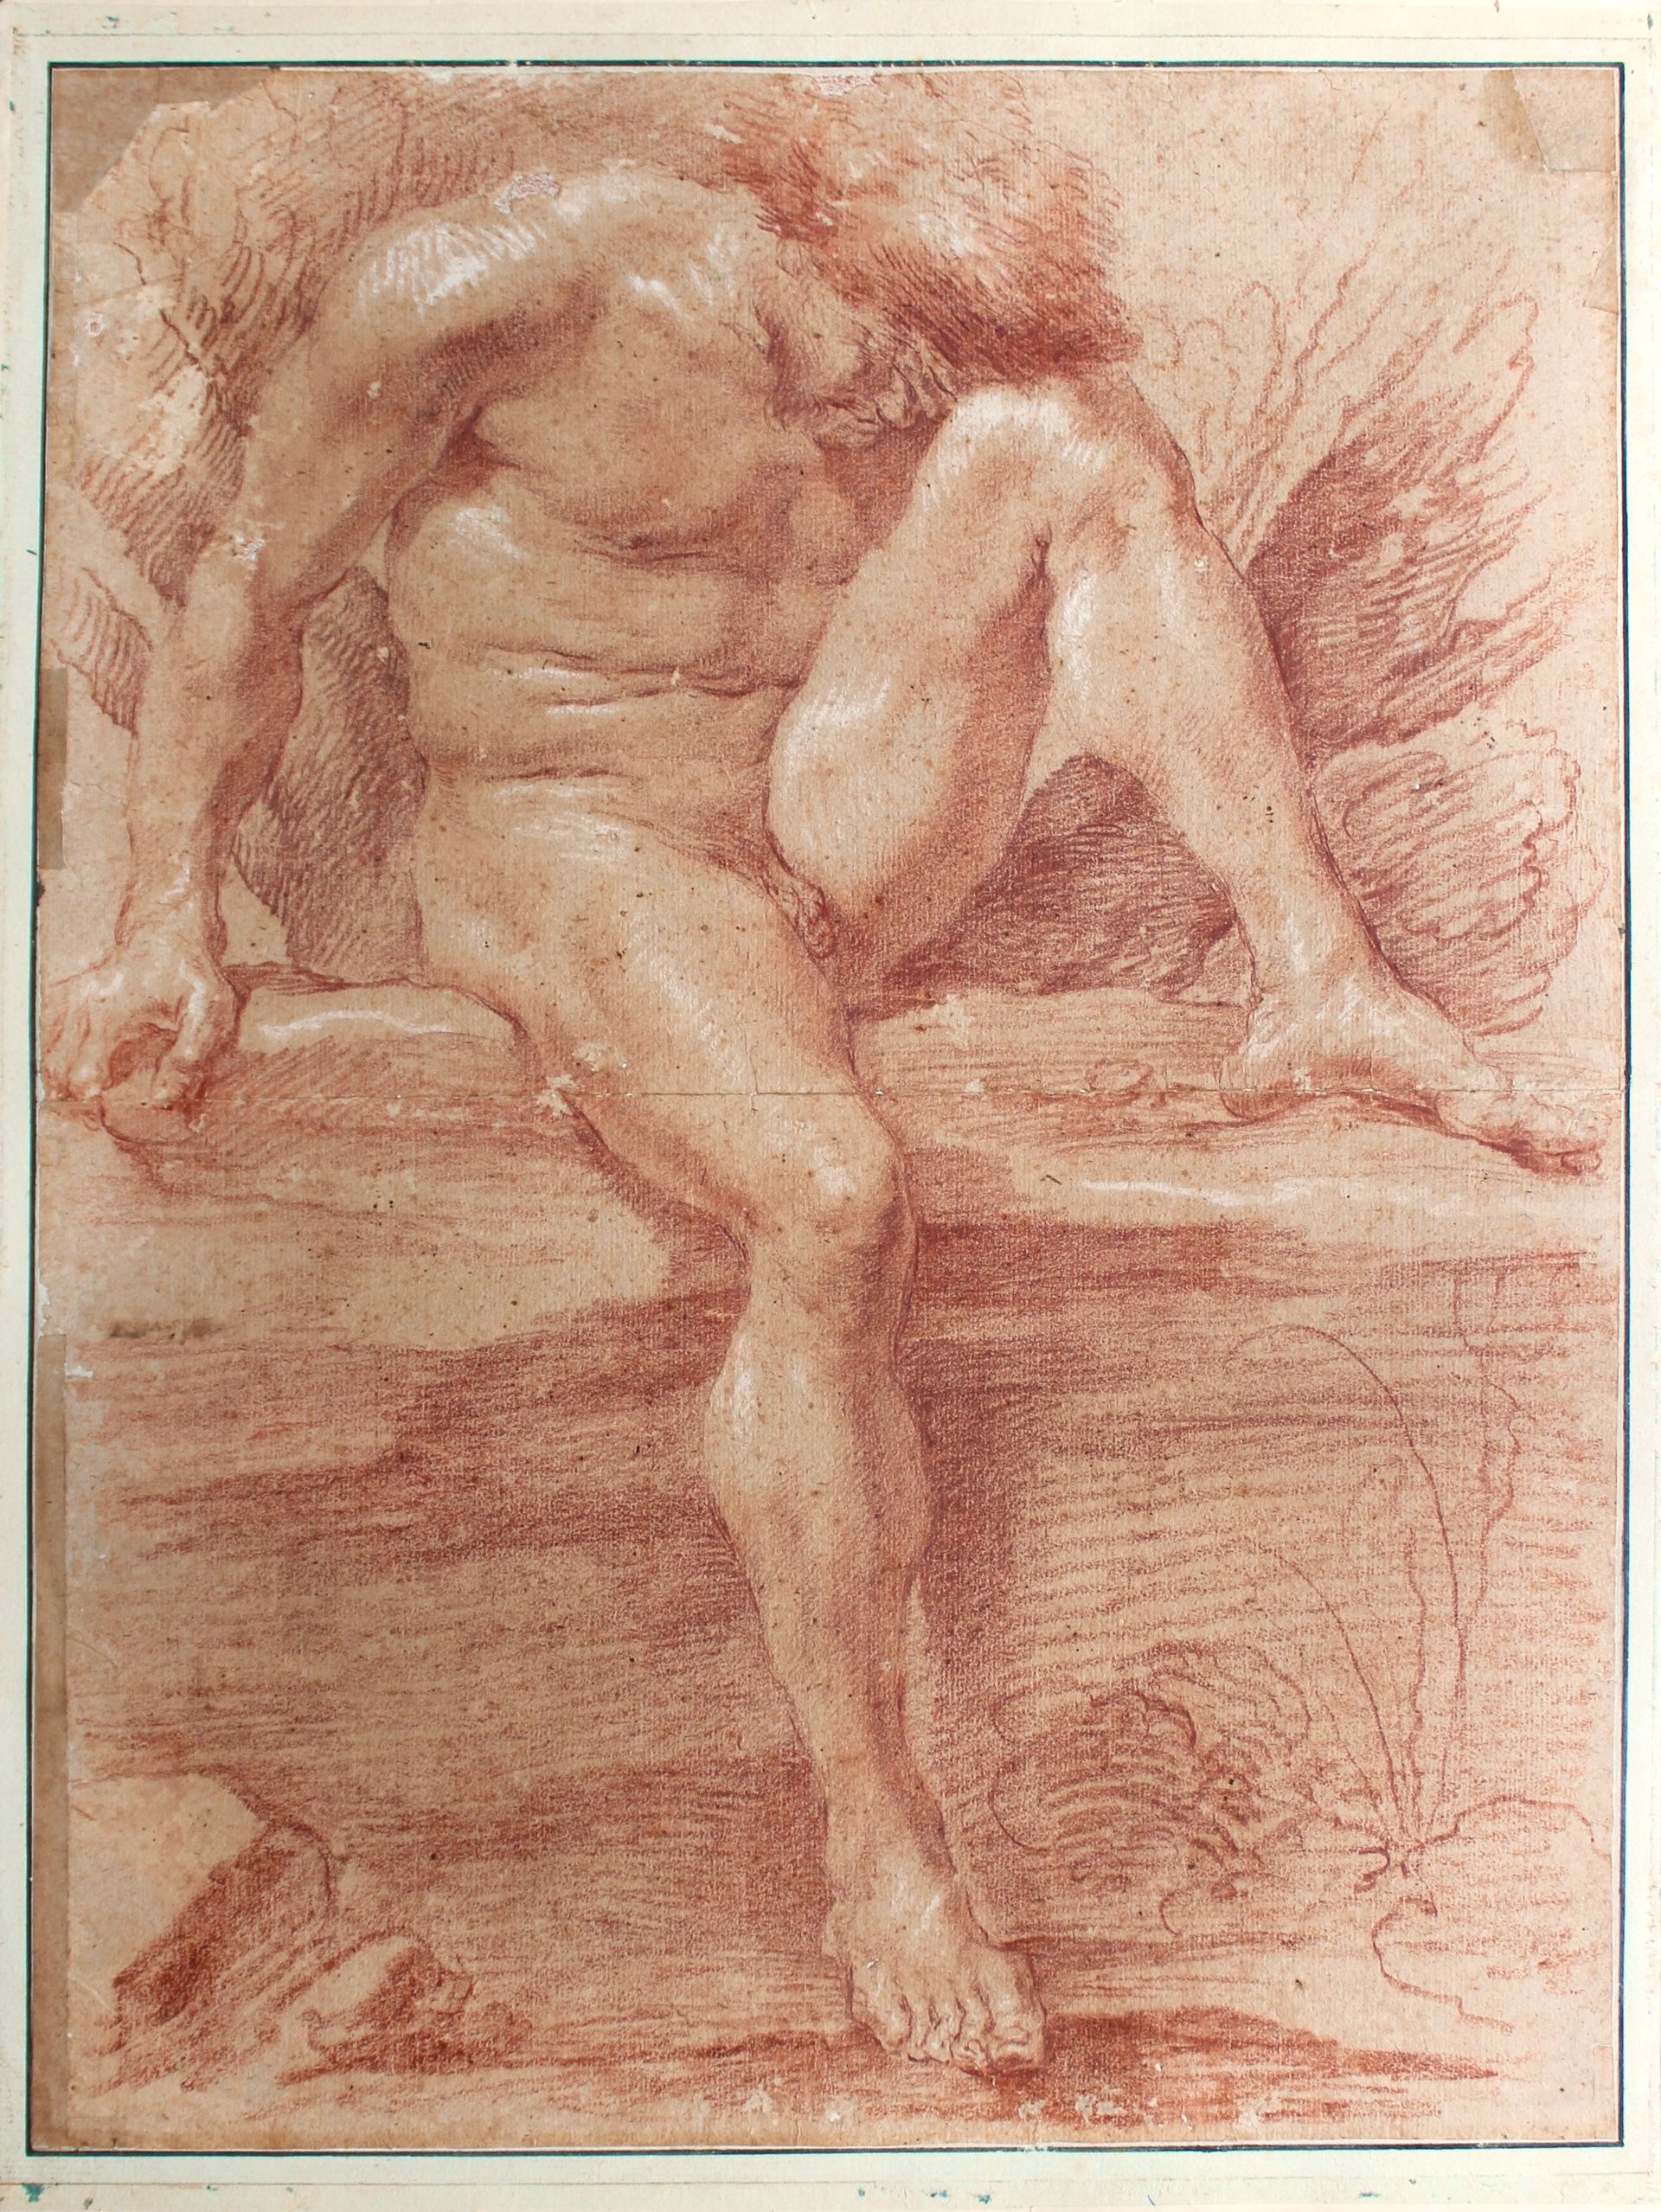 Gian Lorenzo Bernini, Académie d’homme, sanguine avec de légers rehauts de craie blanche, 56 x 42,5 cm. Courtesy Actéon